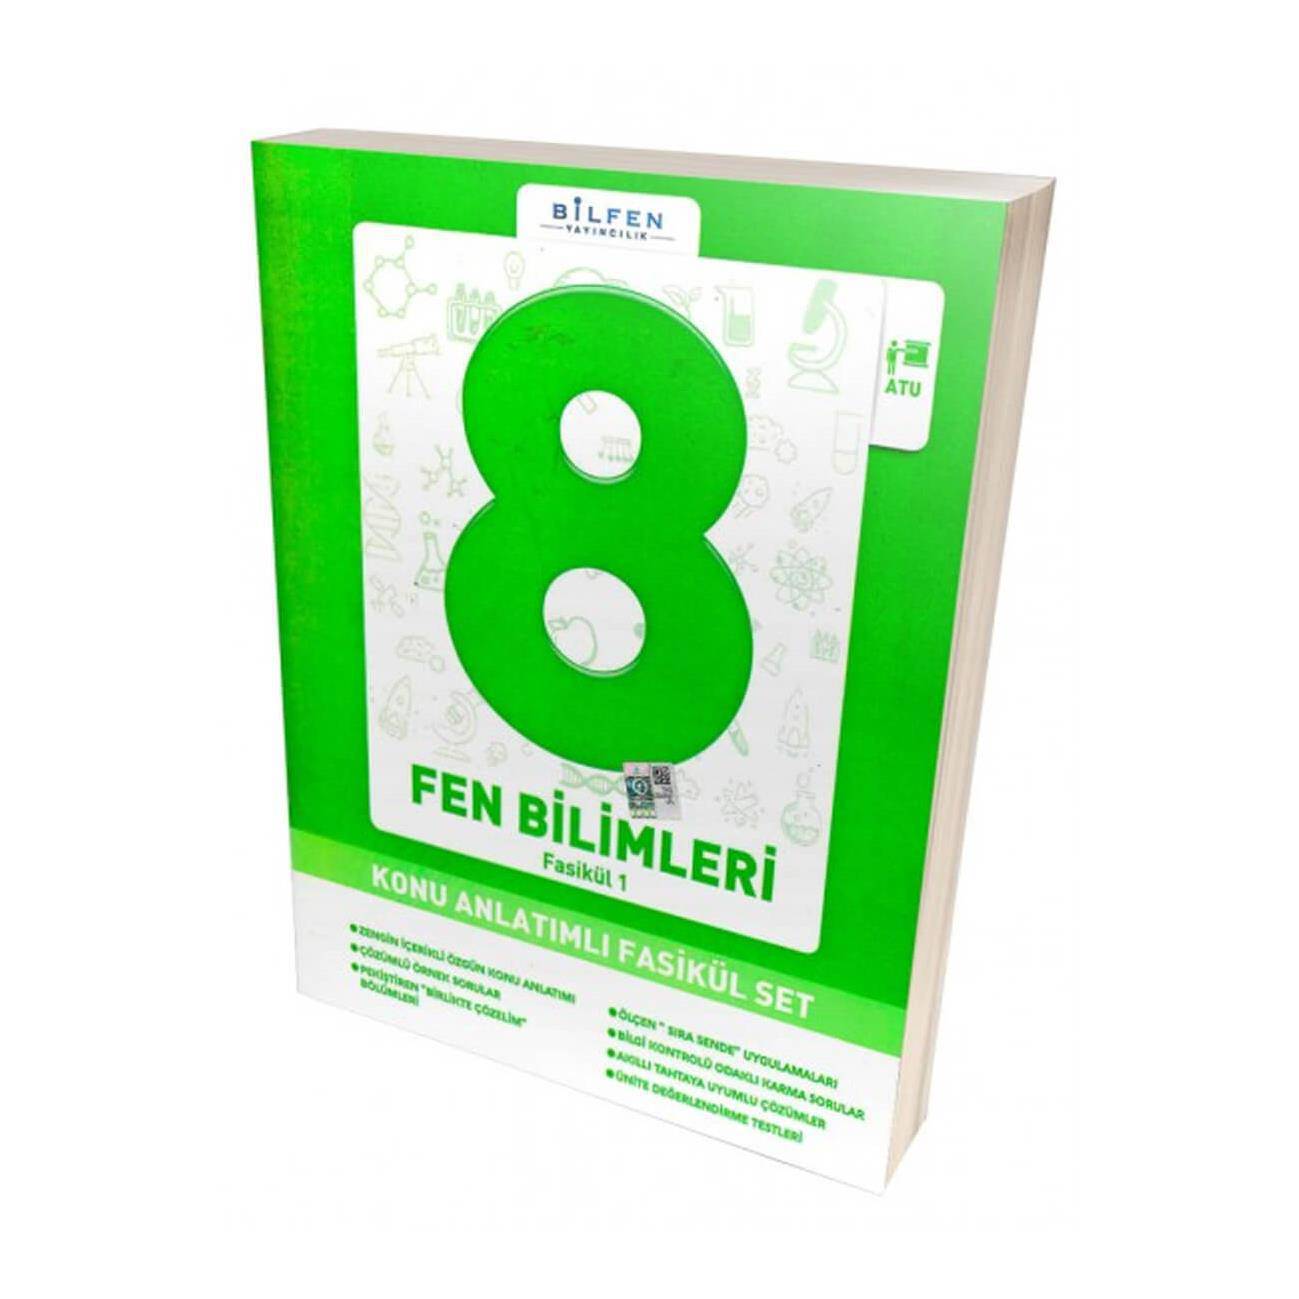 BİLFEN 8.SINIF FEN BİLİMLERİ KONU ANLATIMLI FASİKÜL SET